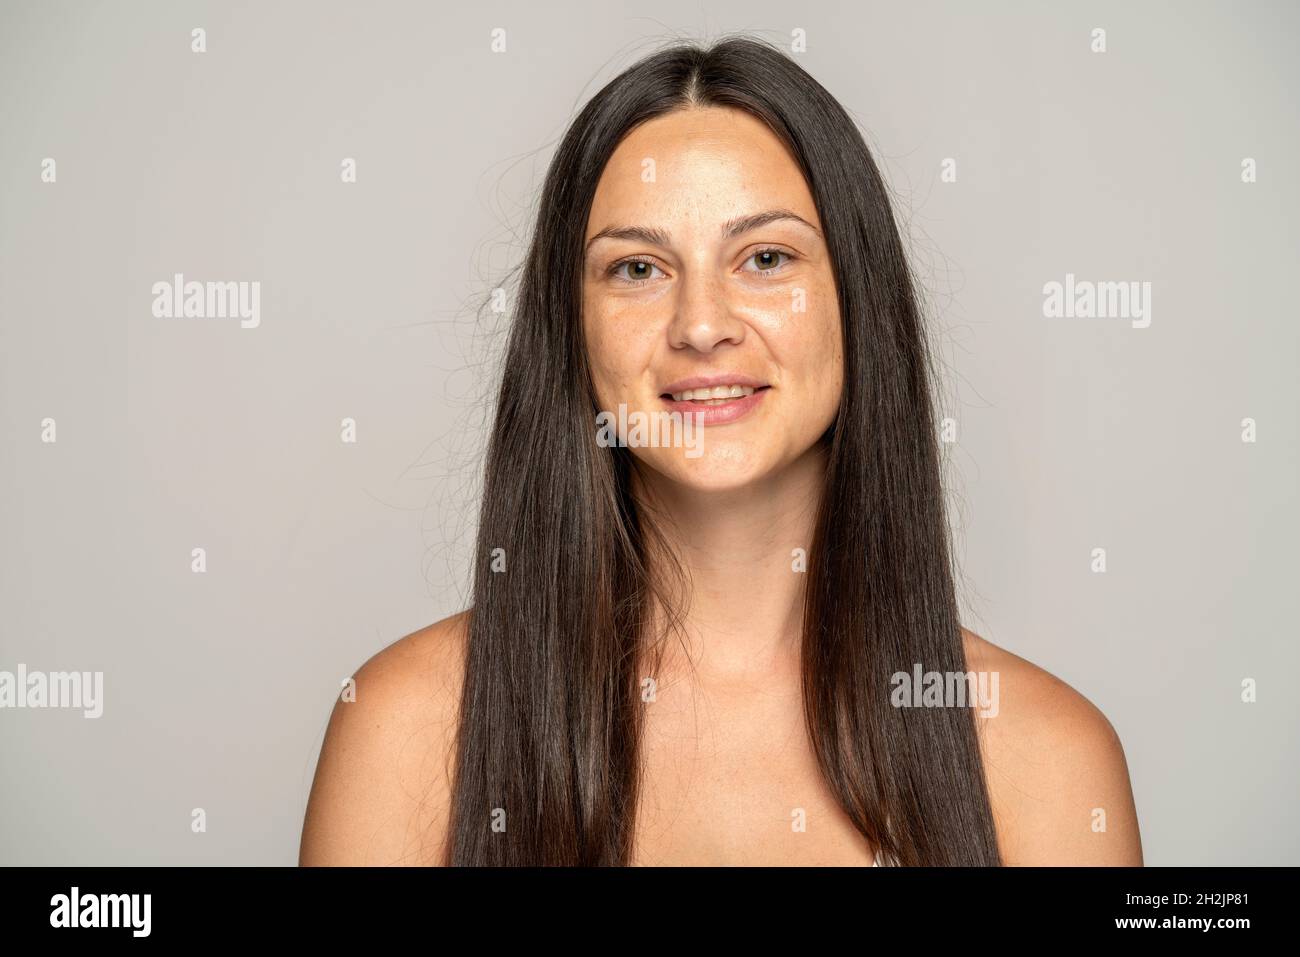 una giovane donna sorridente senza trucco con capelli lunghi su sfondo grigio Foto Stock